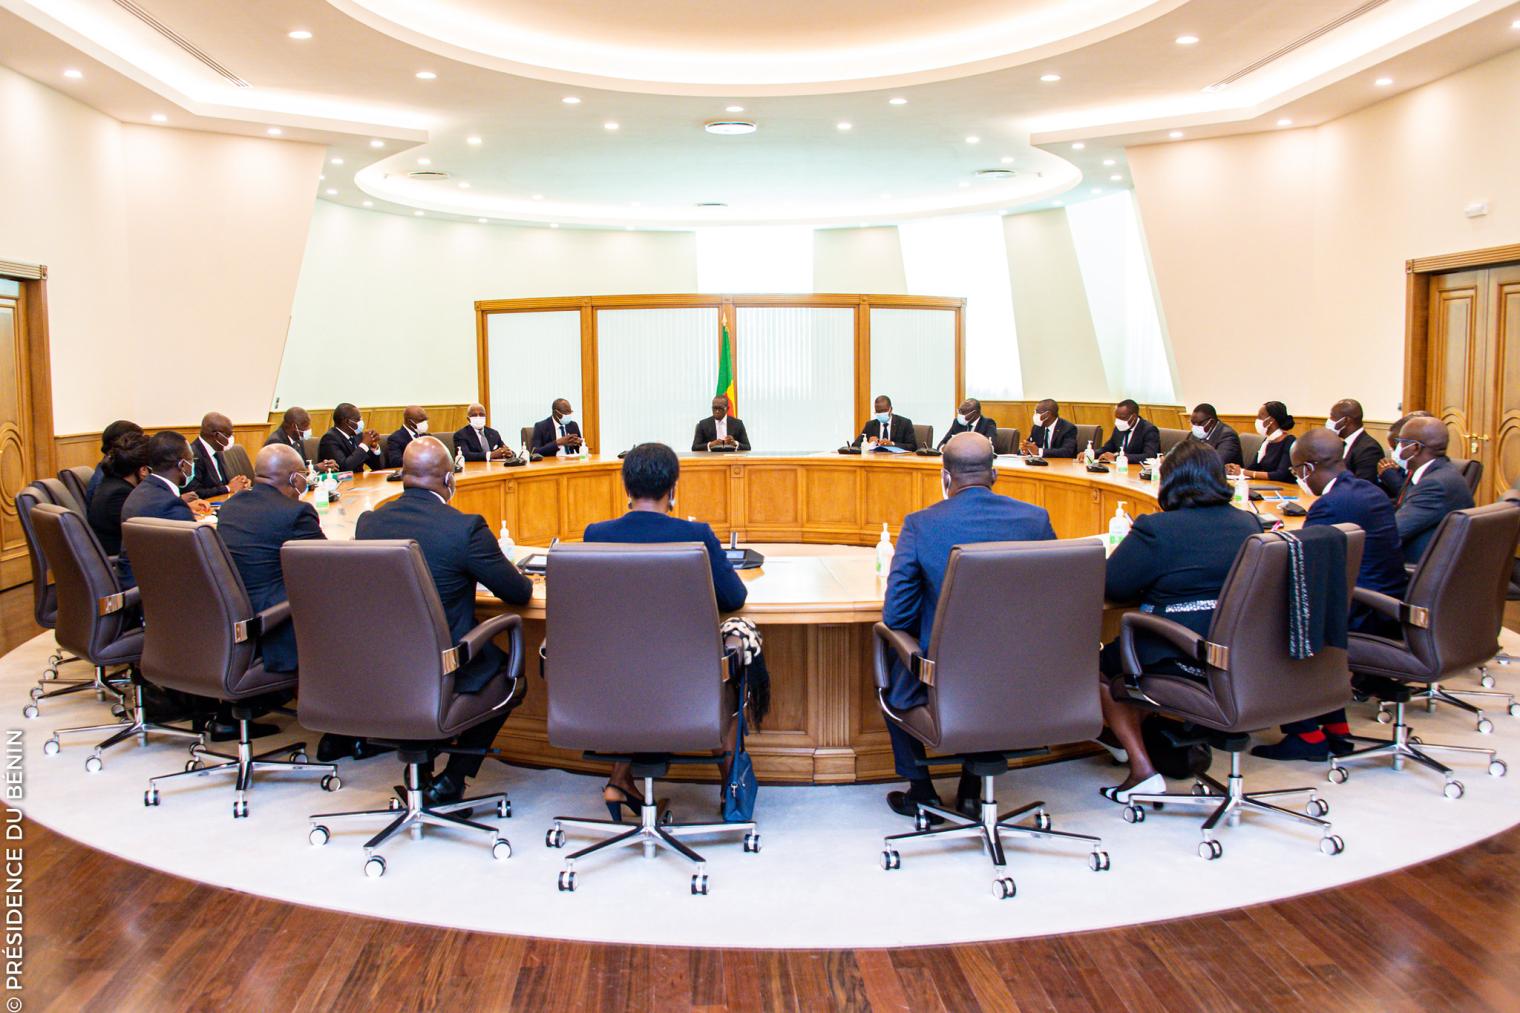 Bénin – Conseil des ministres : compte rendu de la session du 23 novembre 2022